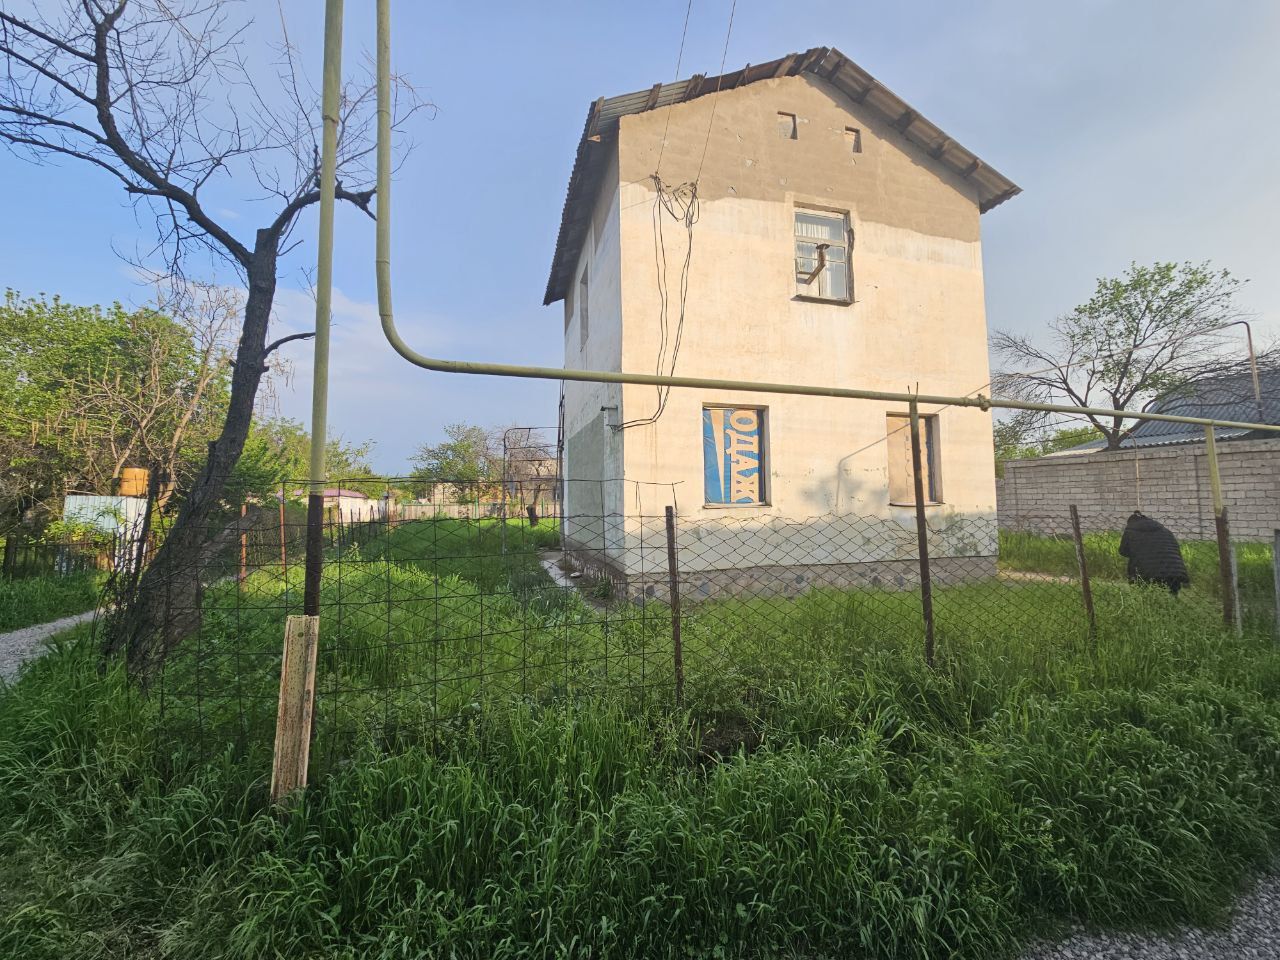 Янги Узбекистан дачный посёлок "Орлиное гнездо" 6 соток земли. Угловой